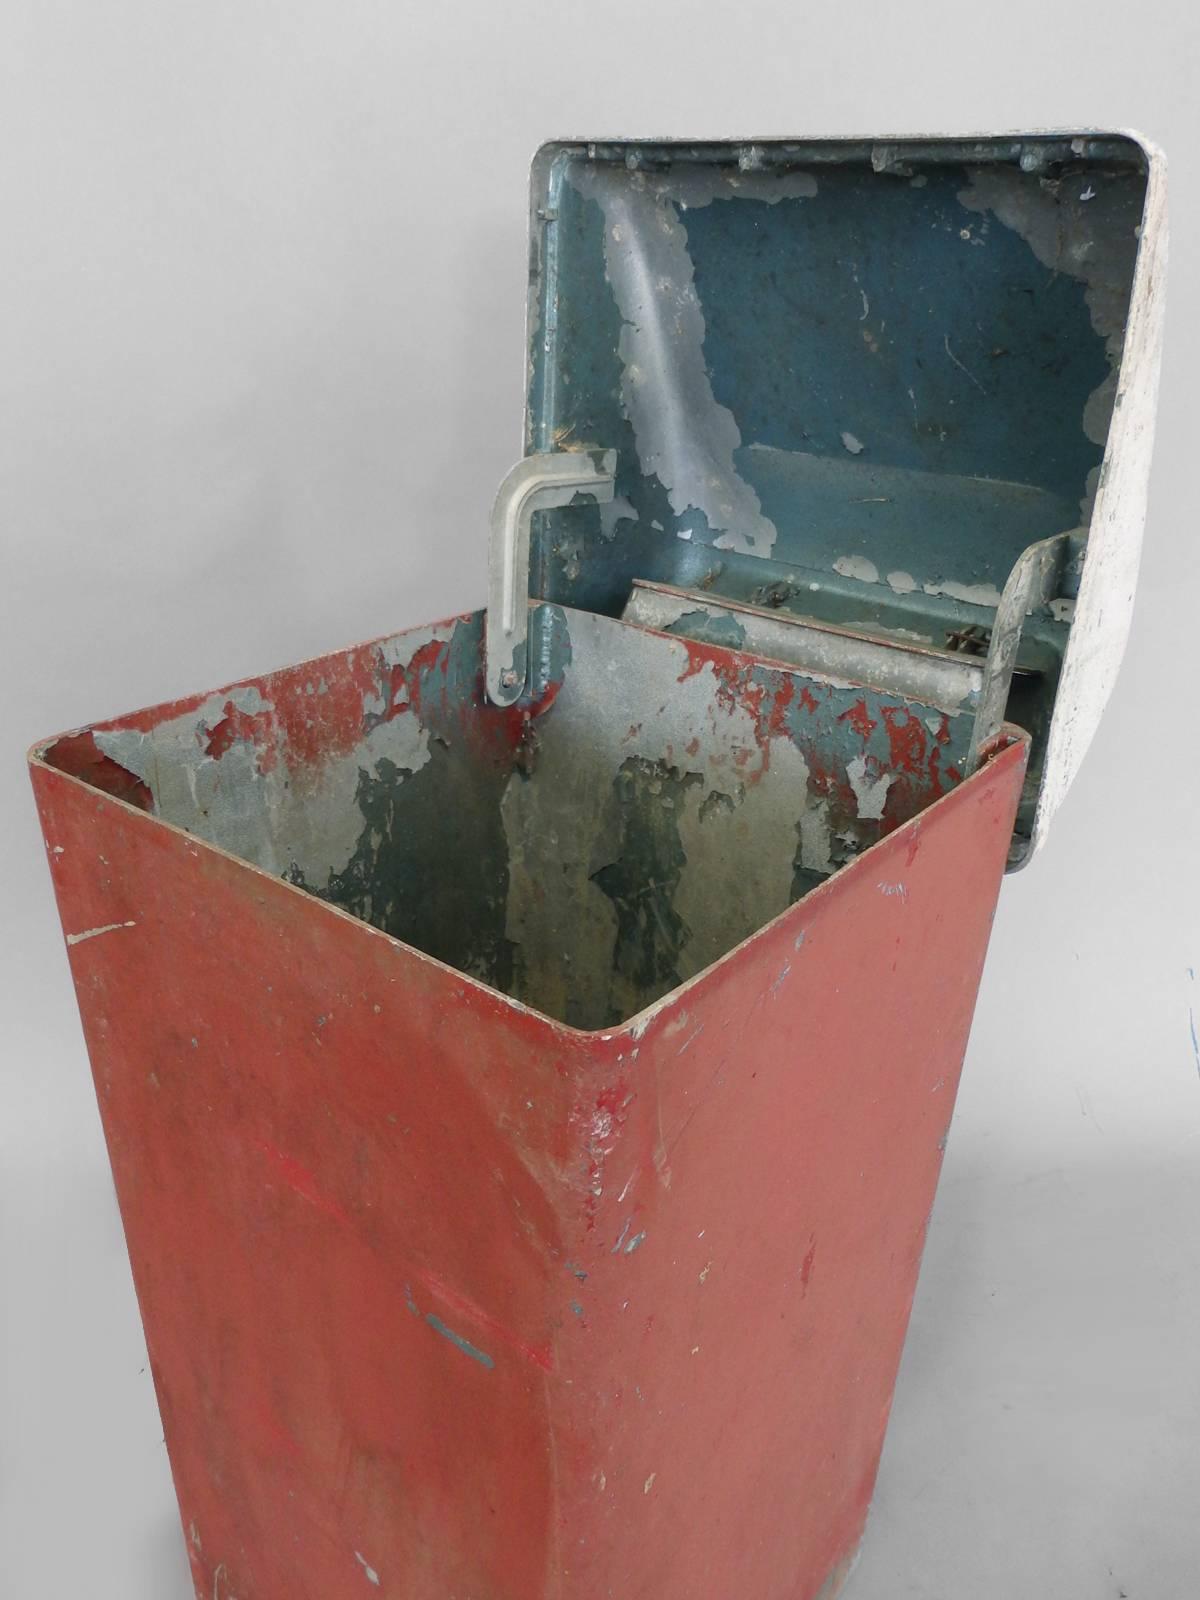 Large moderne Industrial cast aluminum waste basket or trash can.